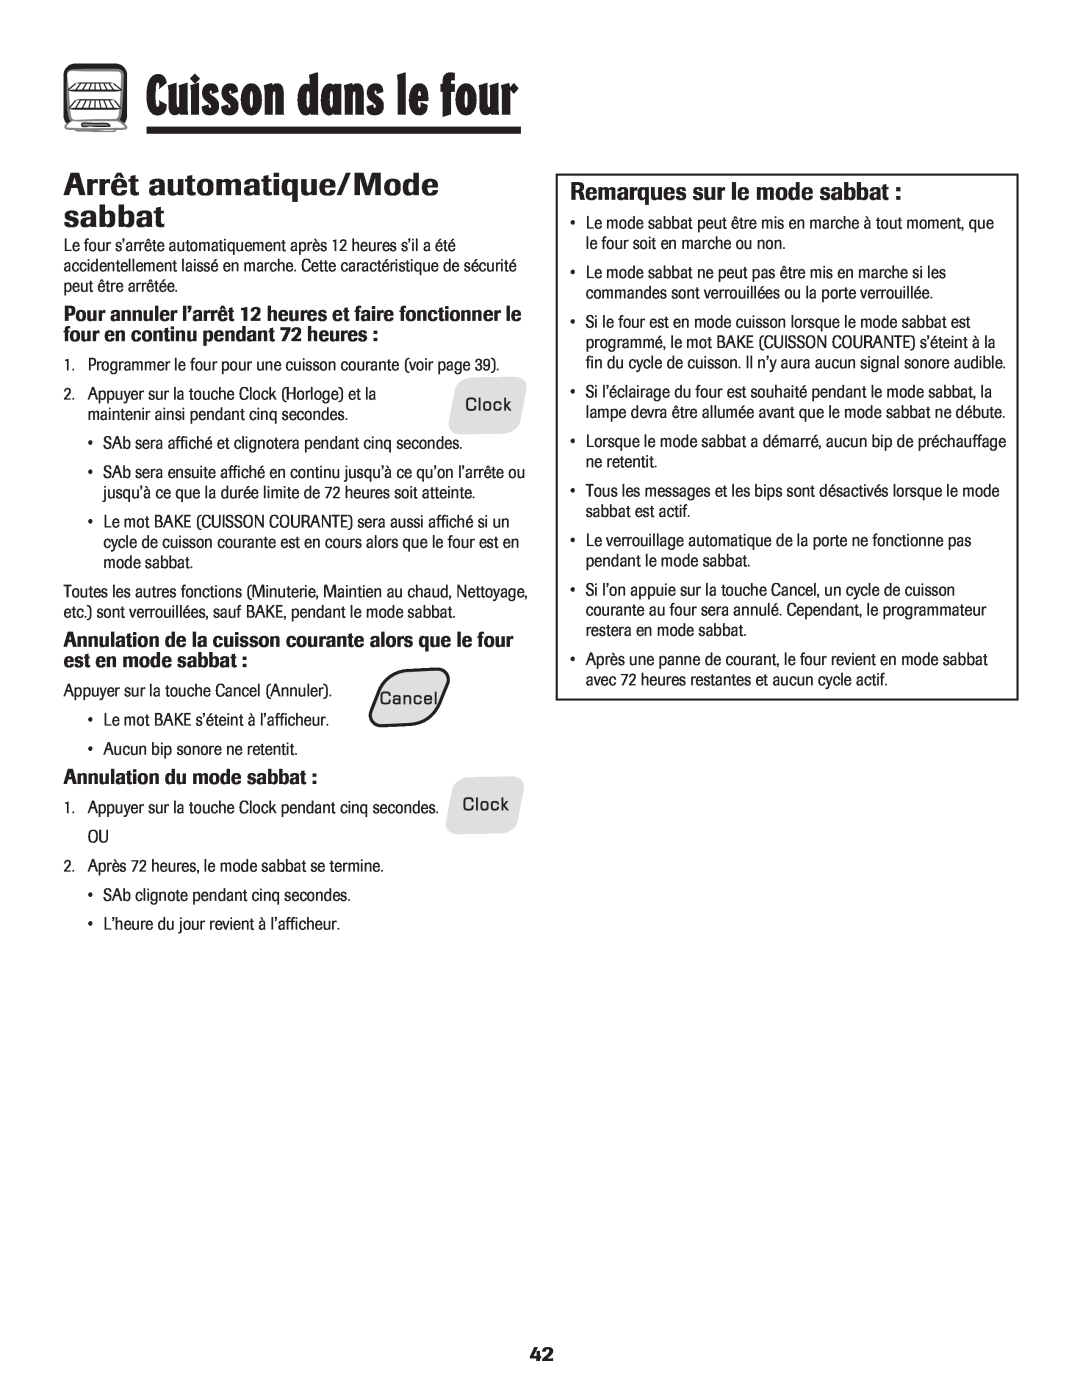 Amana 8113P454-60 warranty Arrêt automatique/Mode sabbat, Remarques sur le mode sabbat, Annulation du mode sabbat 